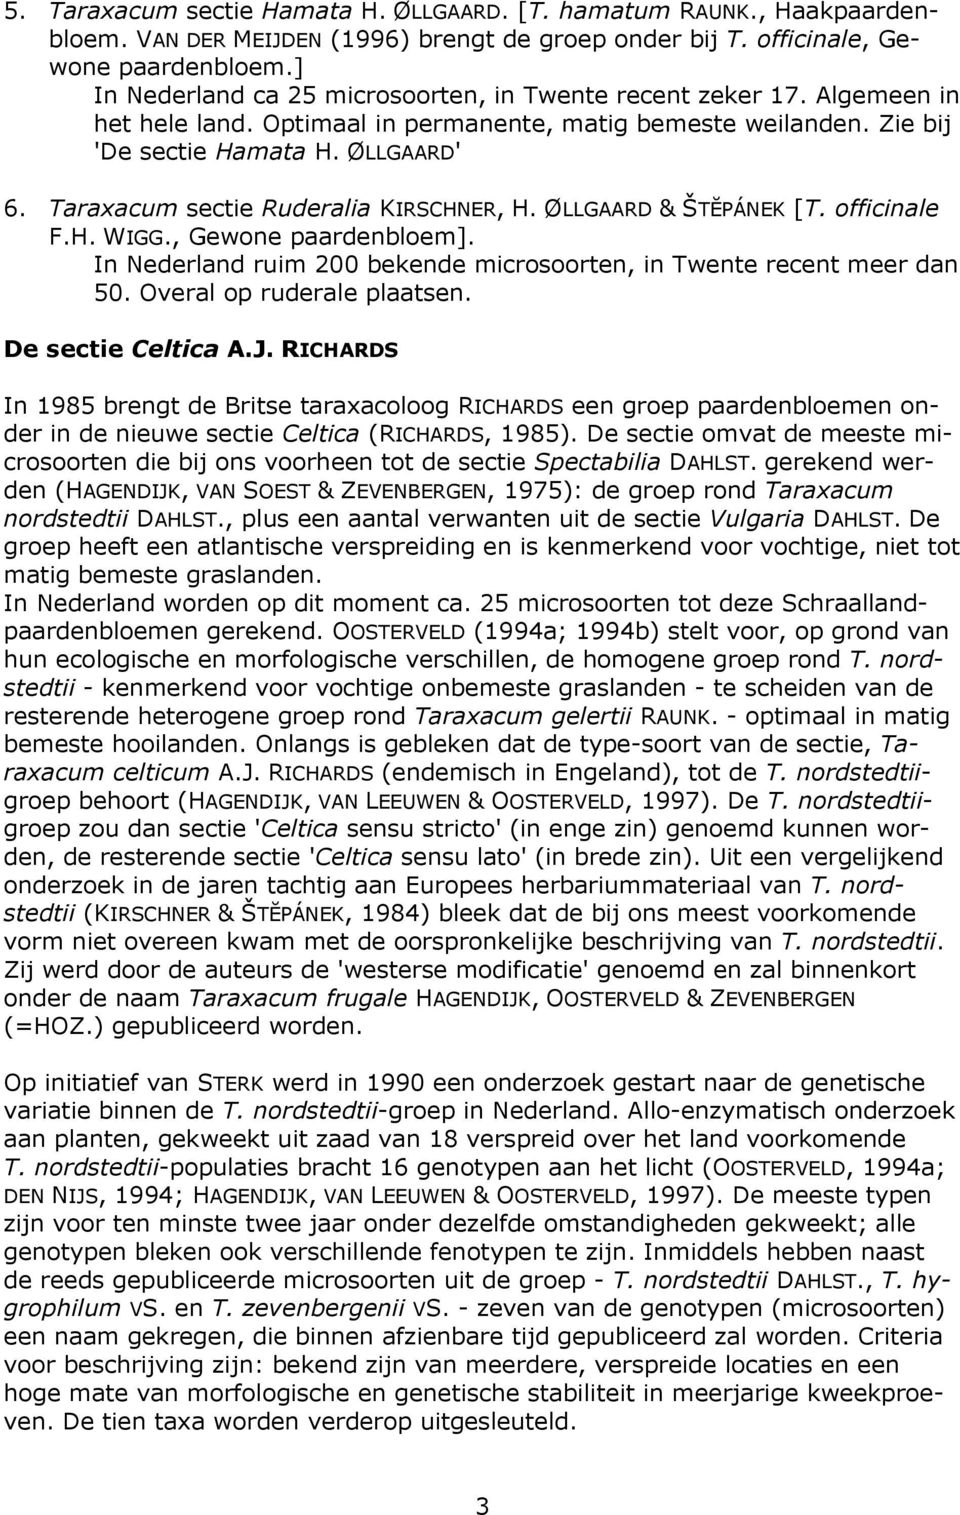 Taraxacum sectie Ruderalia KIRSCHNER, H. ØLLGAARD & ŠTĔPÁNEK [T. officinale F.H. WIGG., Gewone paardenbloem]. In Nederland ruim 200 bekende microsoorten, in Twente recent meer dan 50.